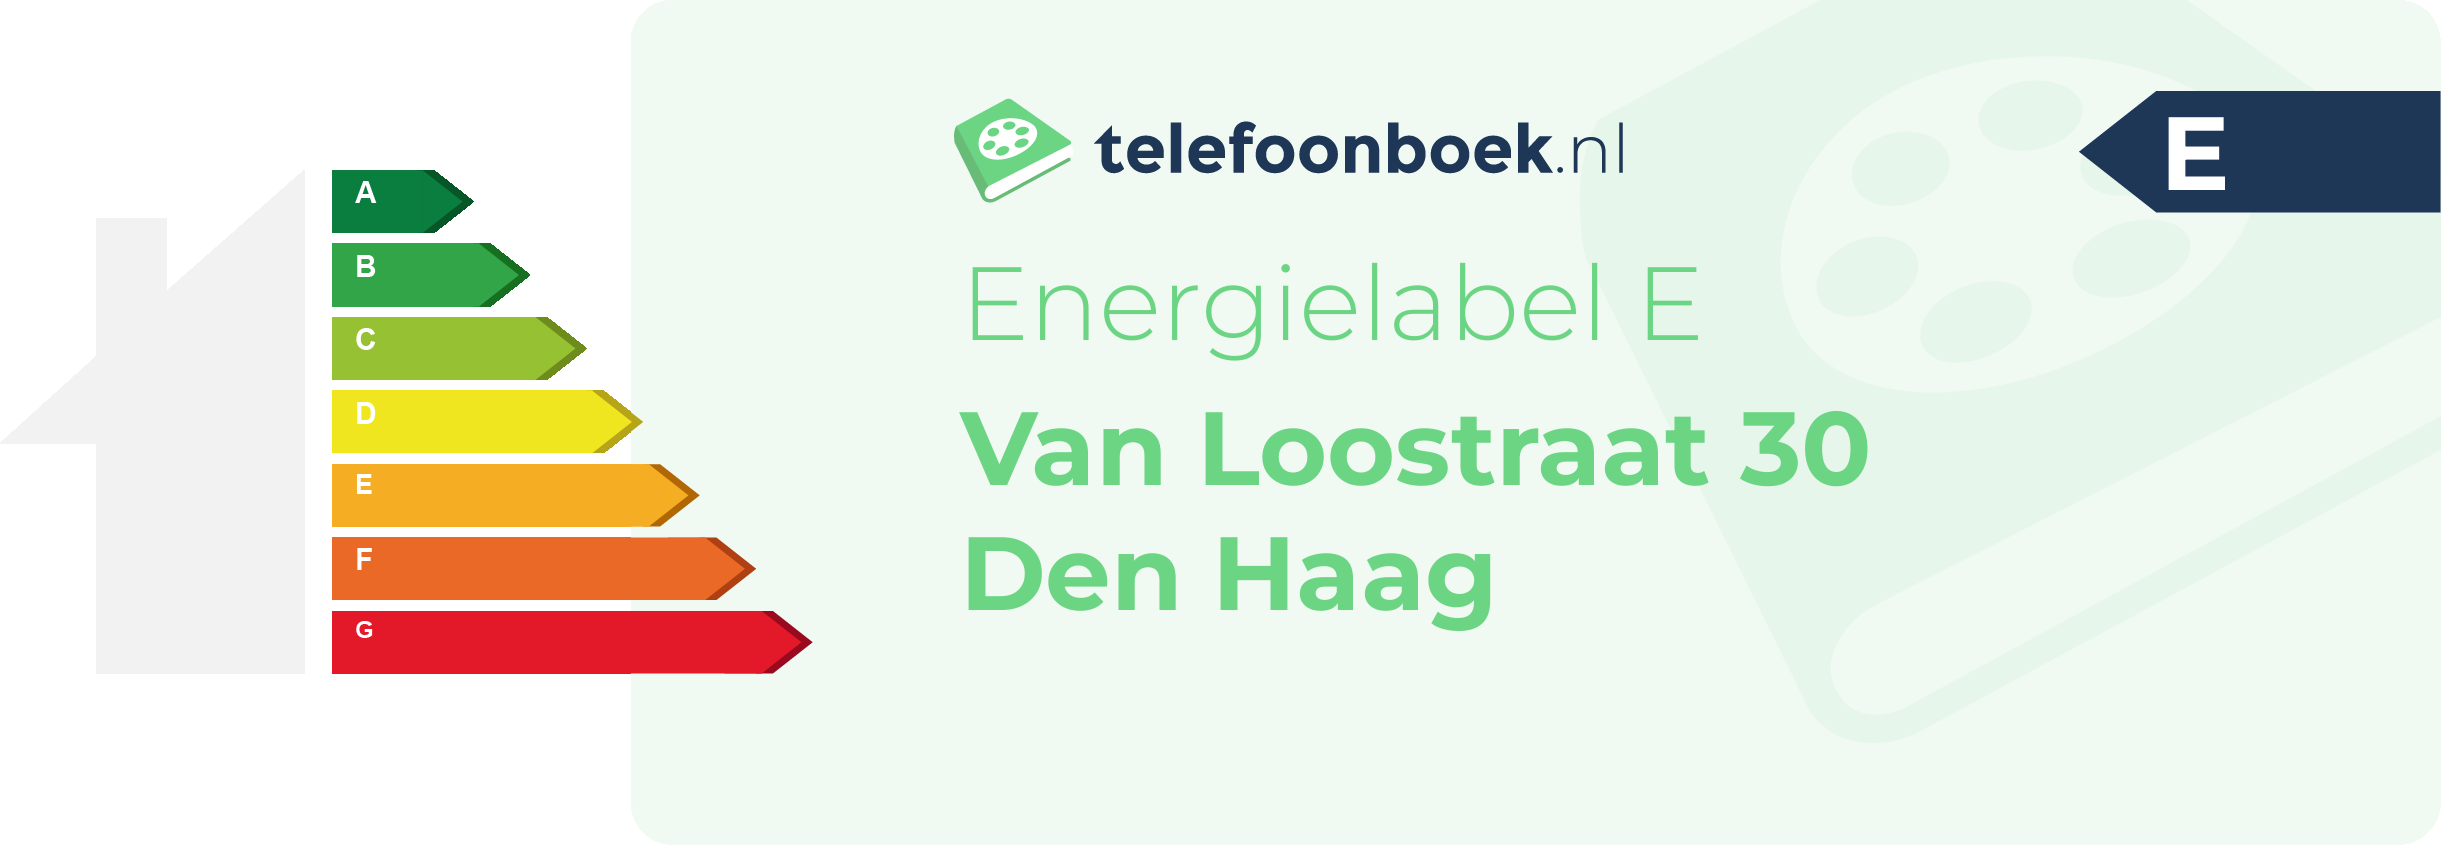 Energielabel Van Loostraat 30 Den Haag